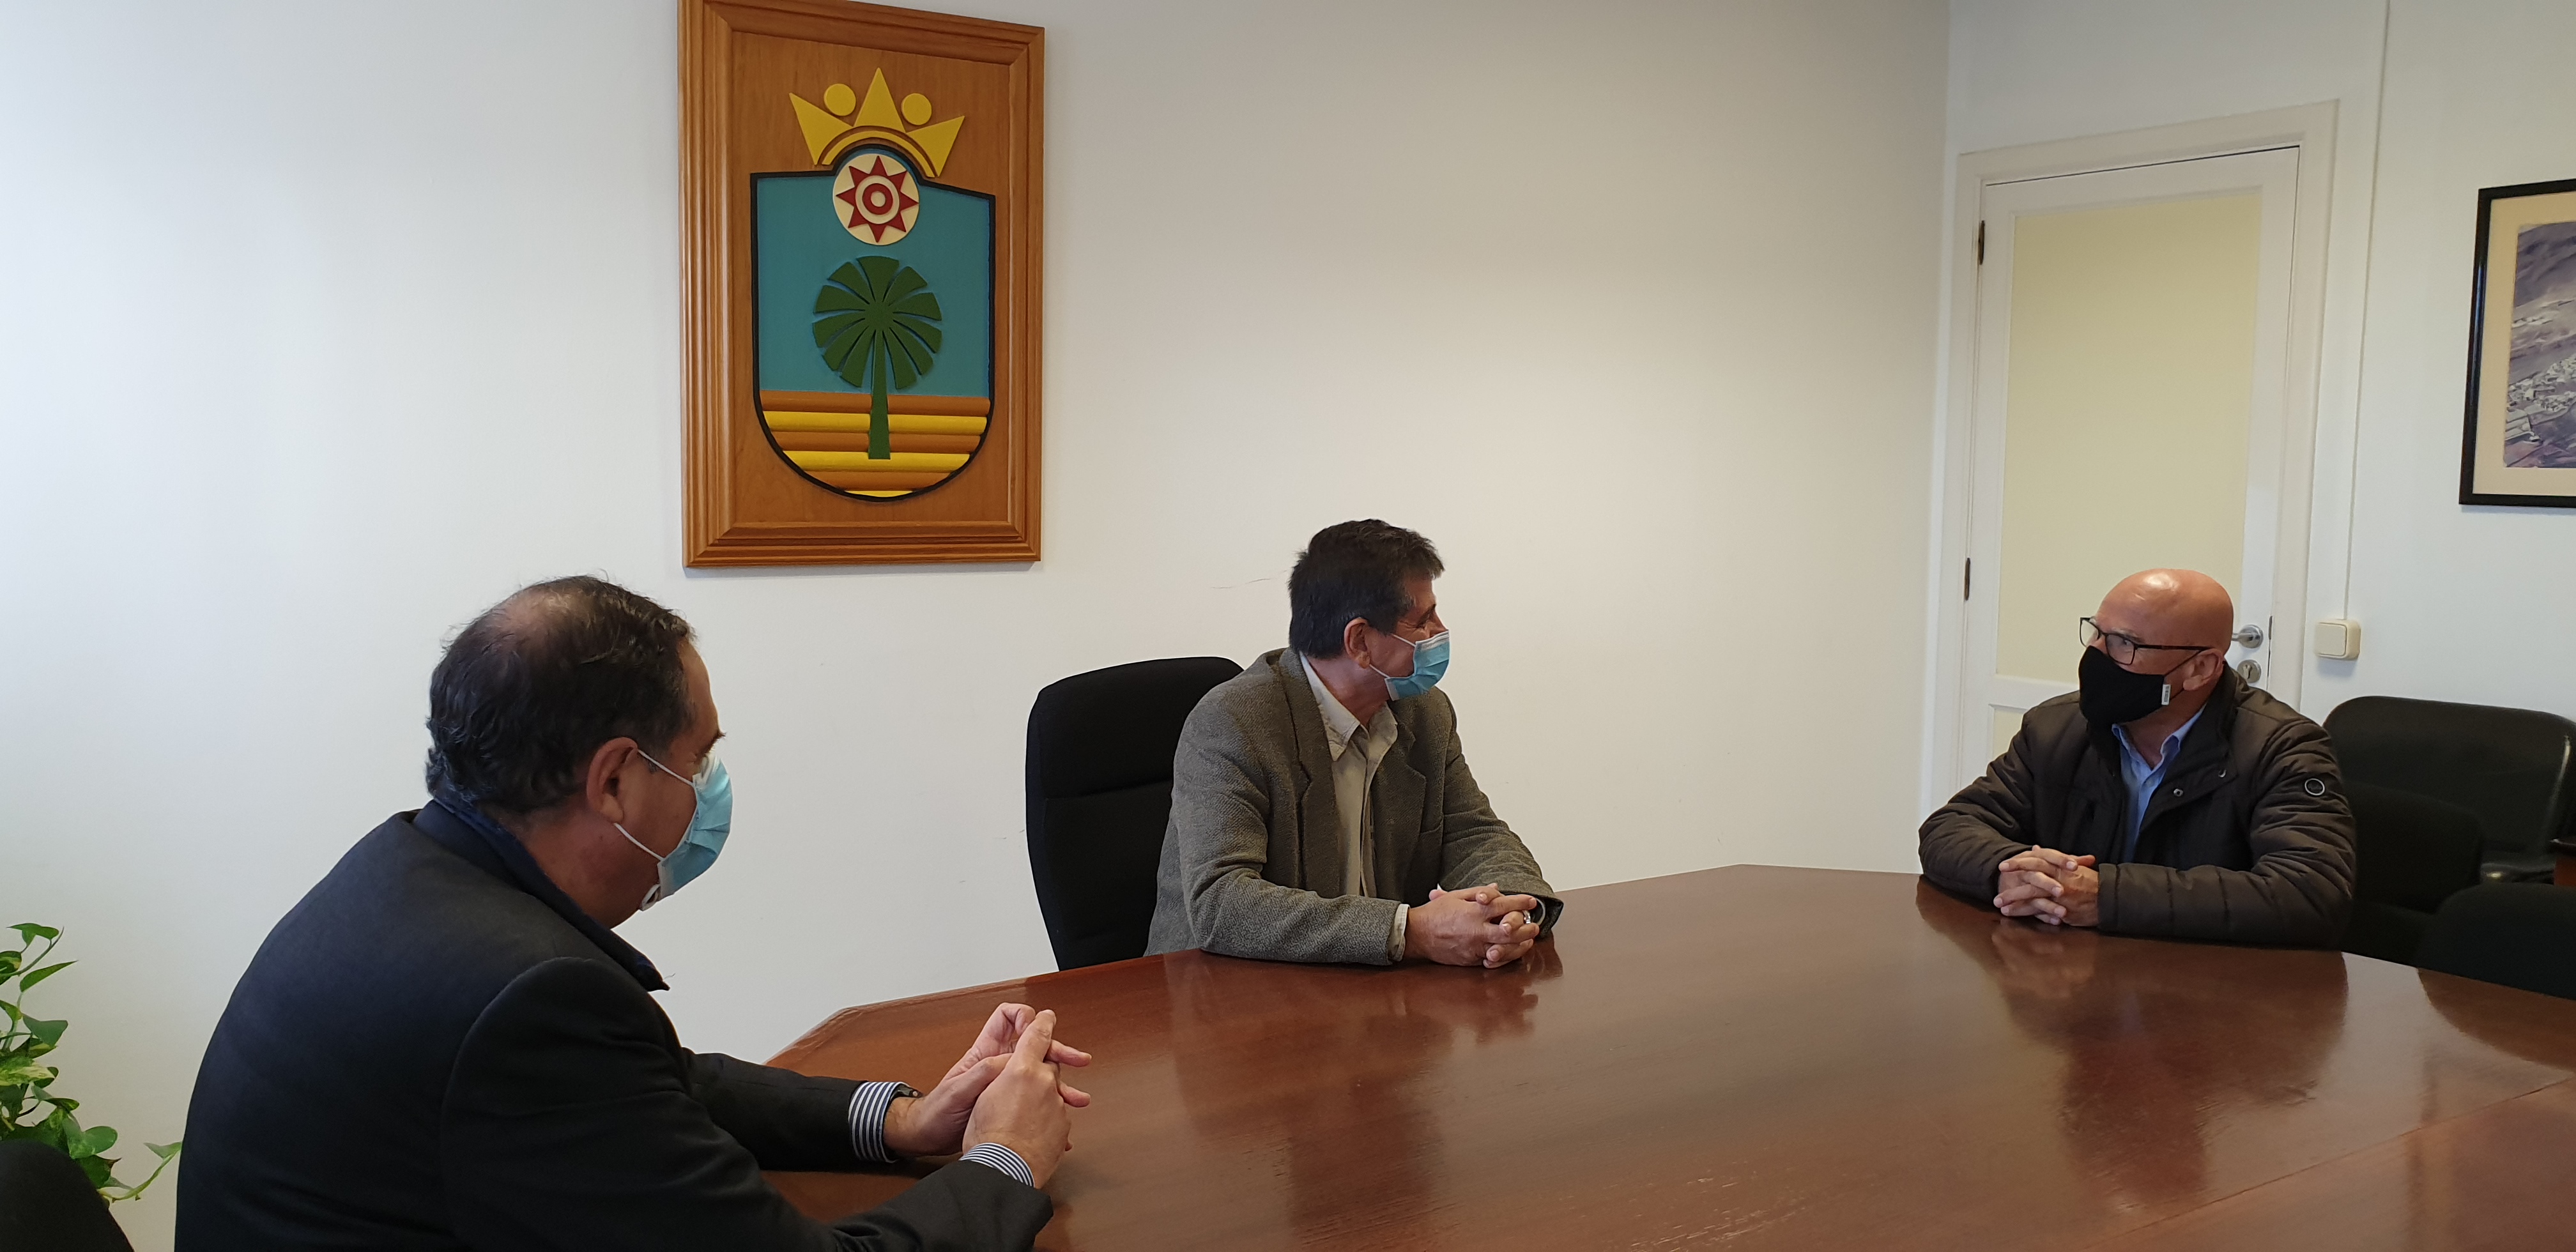 El Ayuntamiento de Santa Lucía y el Diputado del Común incrementarán su colaboración para atender las demandas ciudadanas